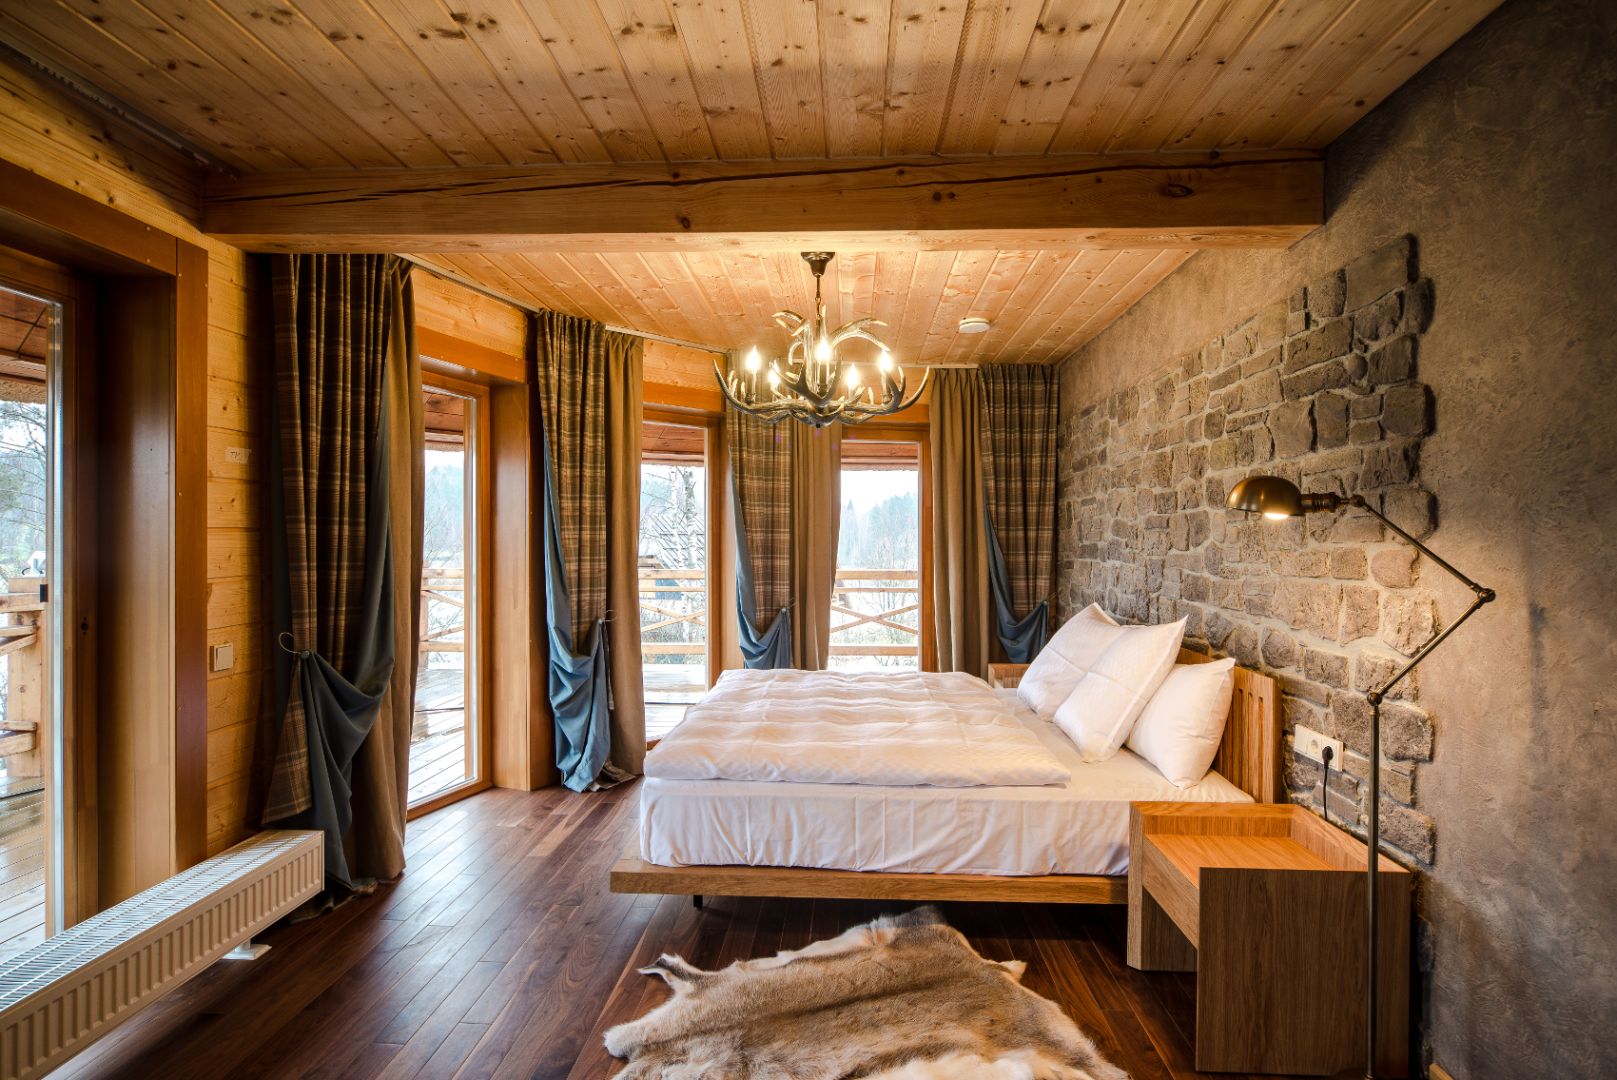 W domach drewnianych już na etapie projektu coraz częściej zwraca się uwagę, na to by wnętrza były odpowiednio doświetlone. Fot. Shutterstock